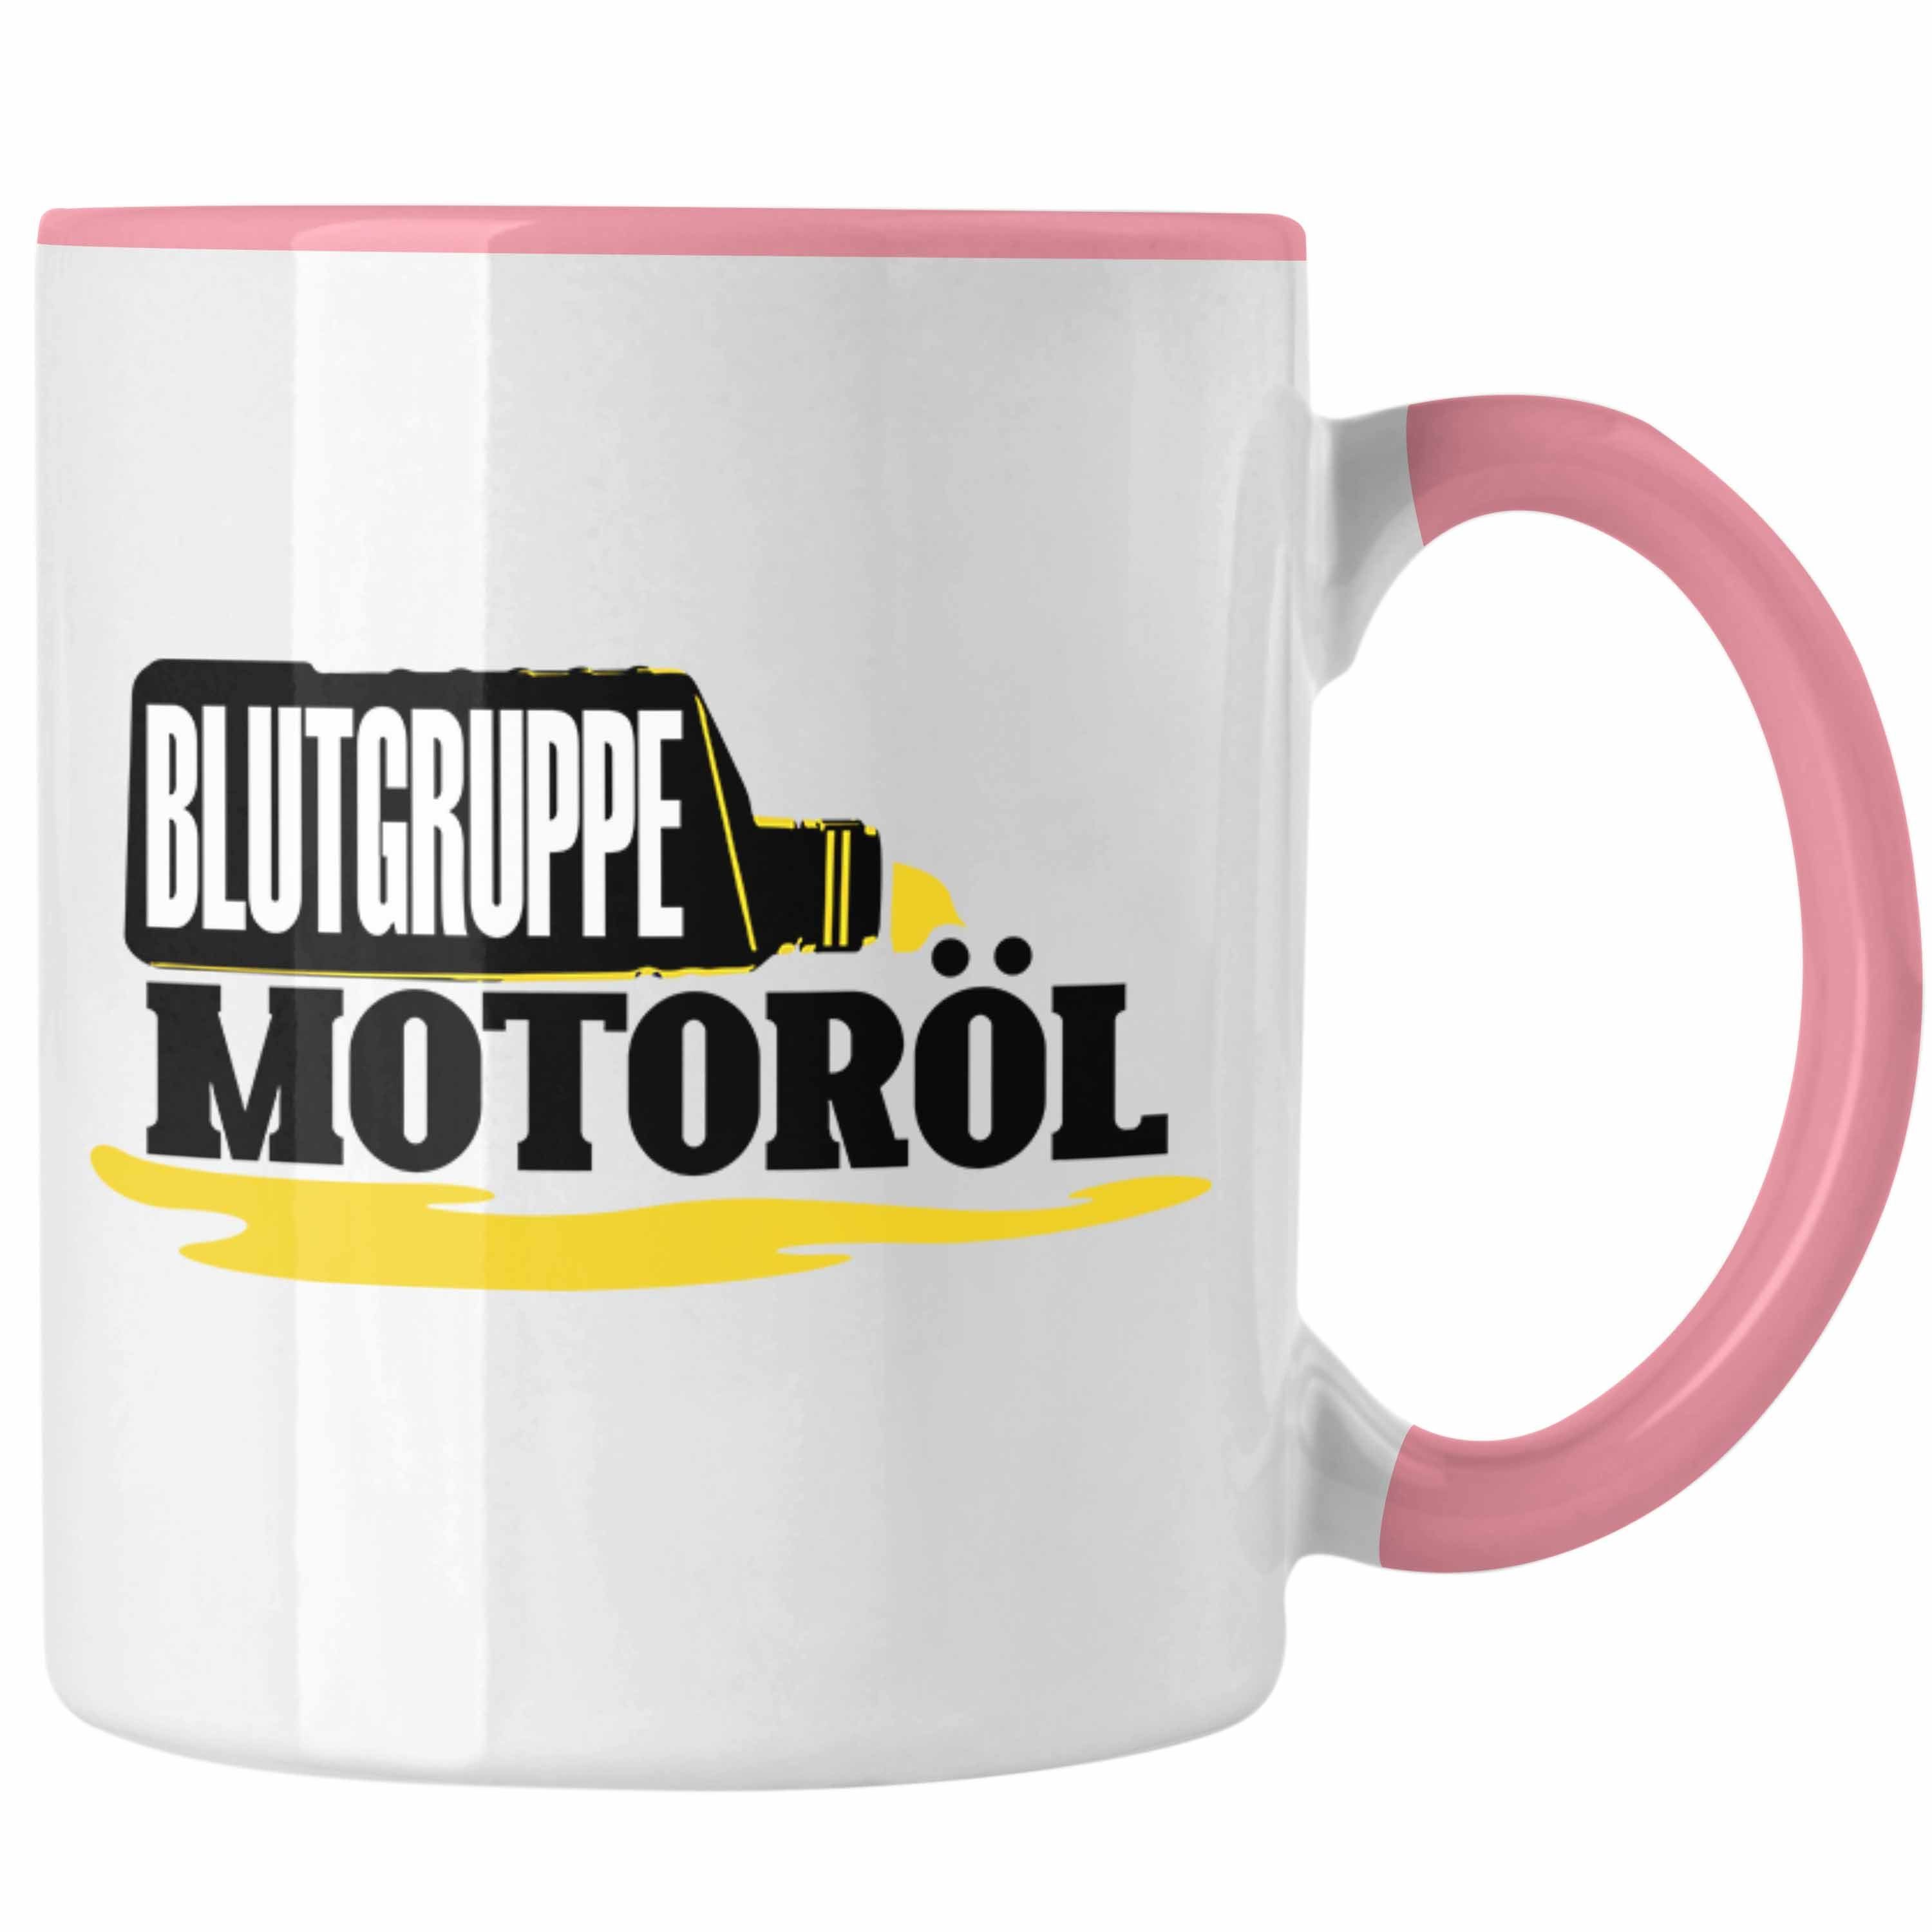 Blutgruppe Motorradfahrer für Auto-Enthusiasten Tasse Tasse Geschenk Rosa Tuner M Trendation